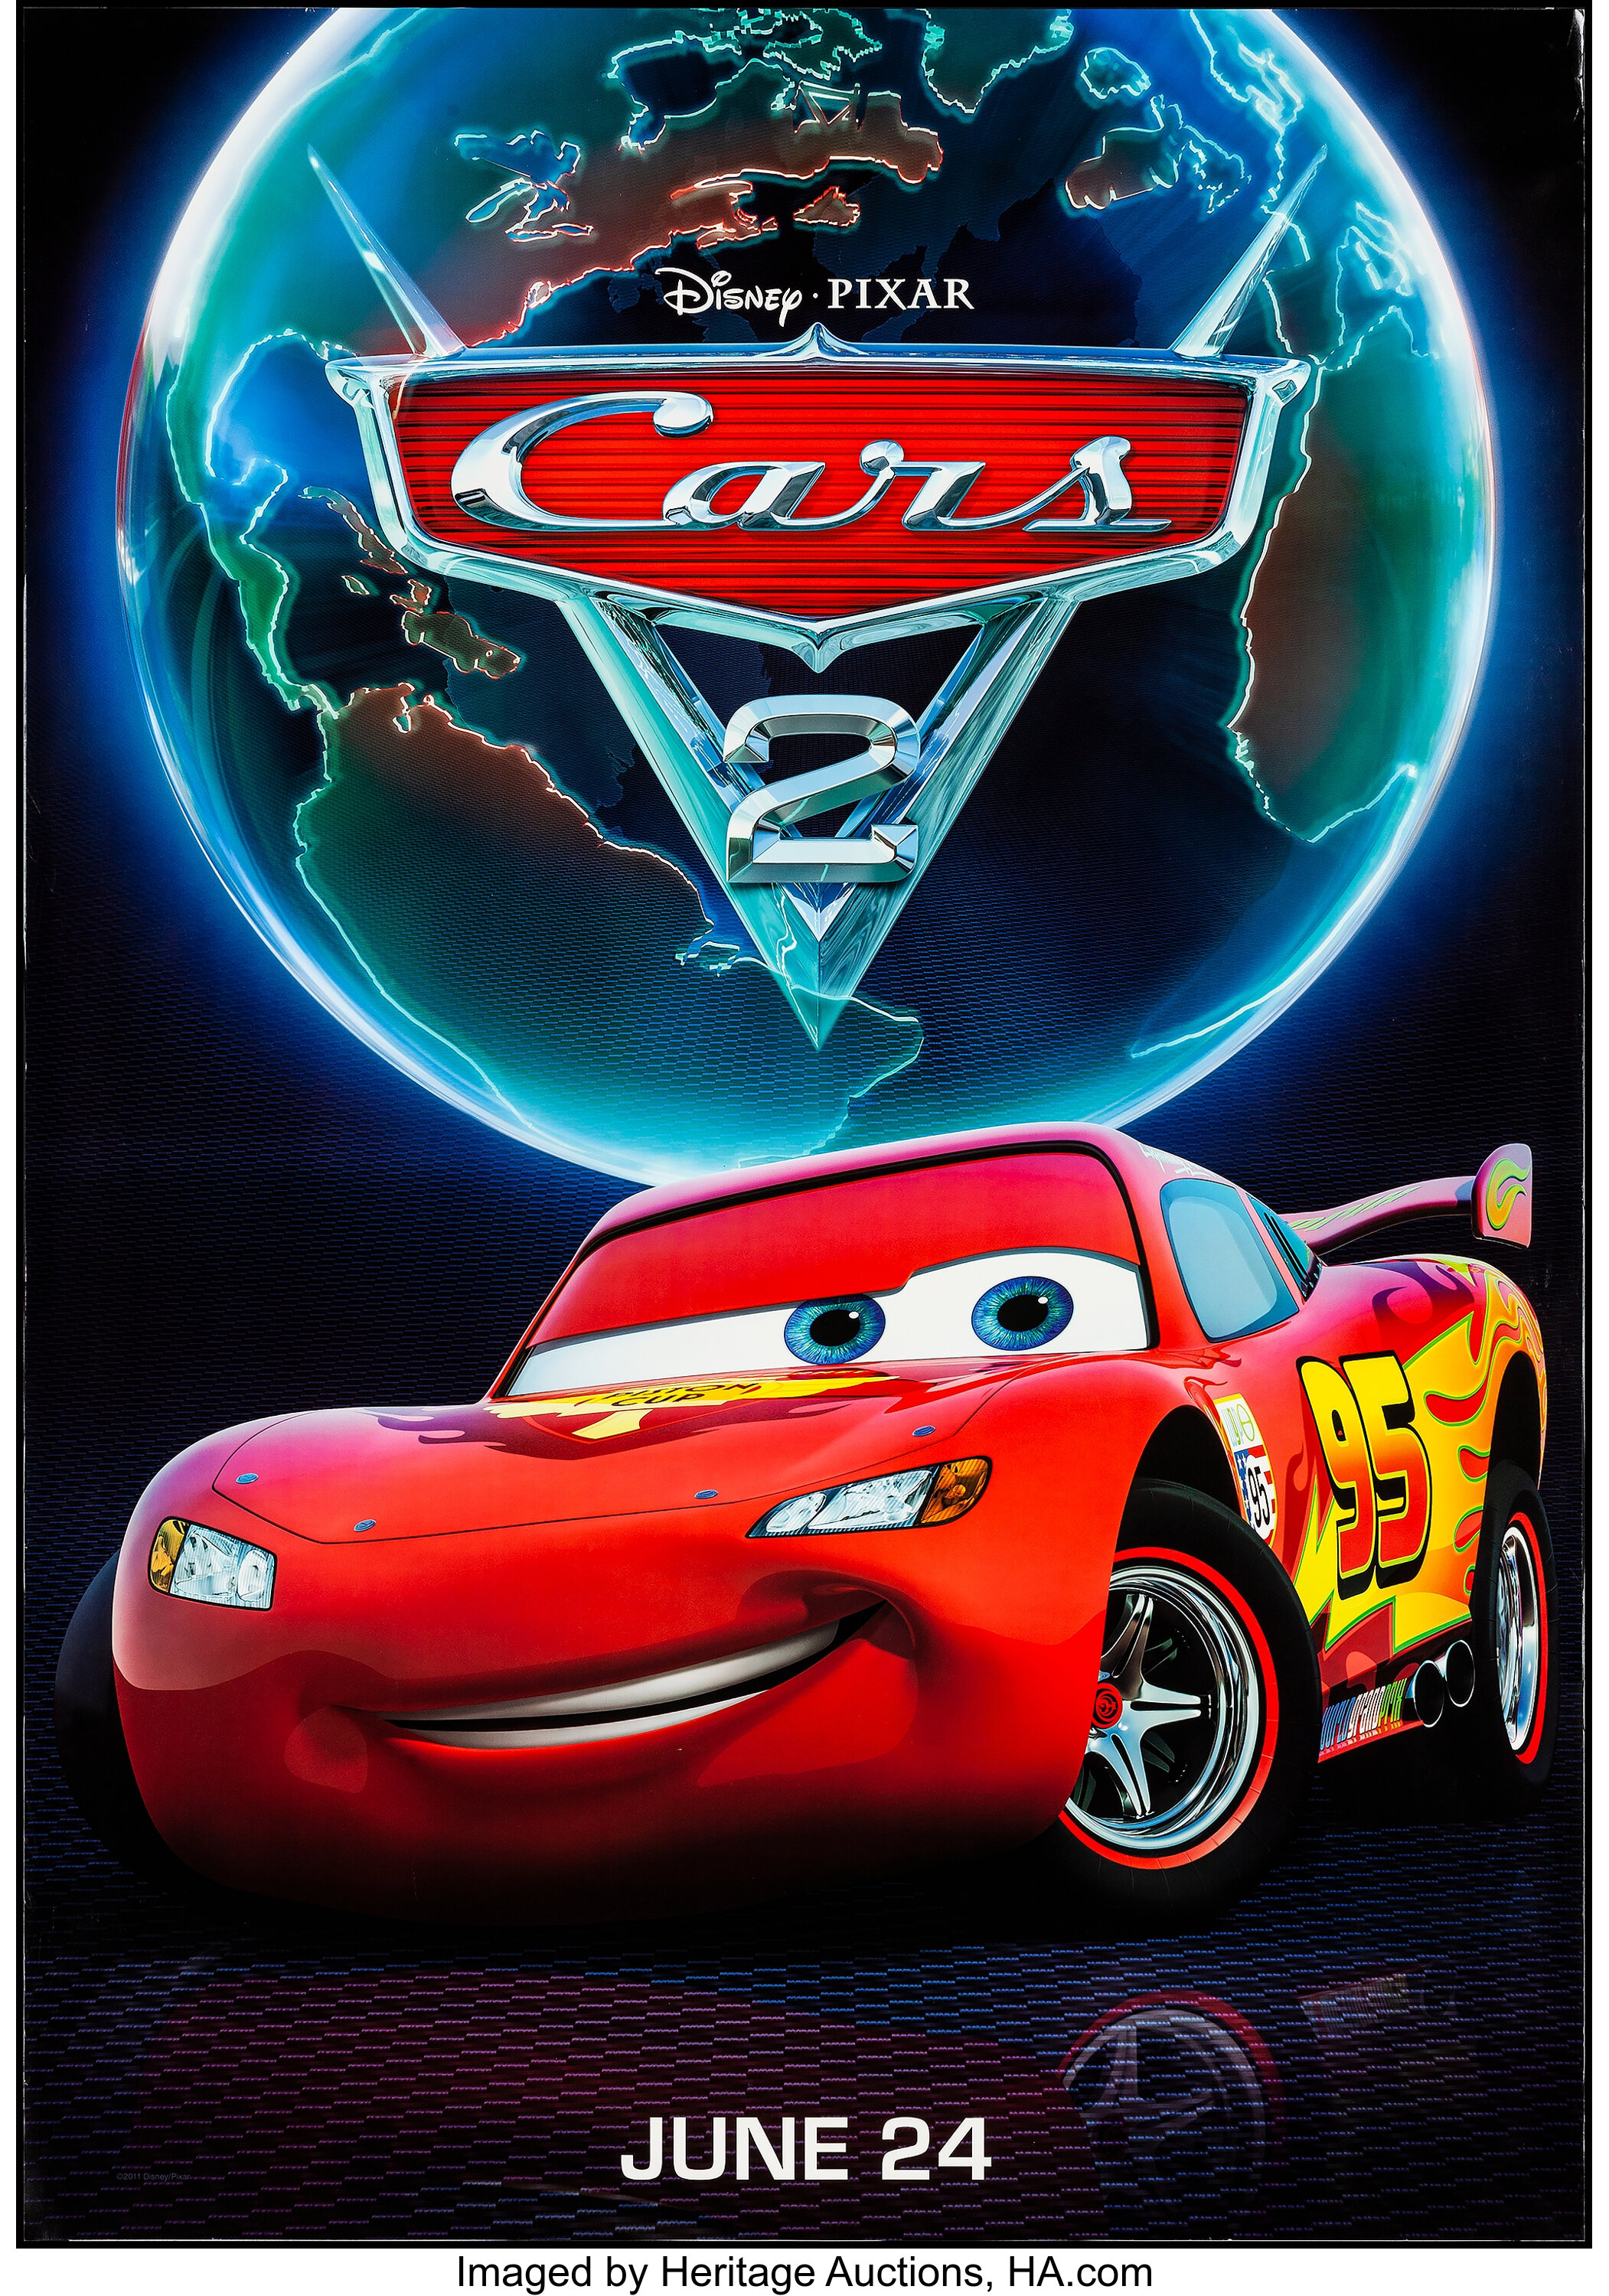 pixar cars 2 logo